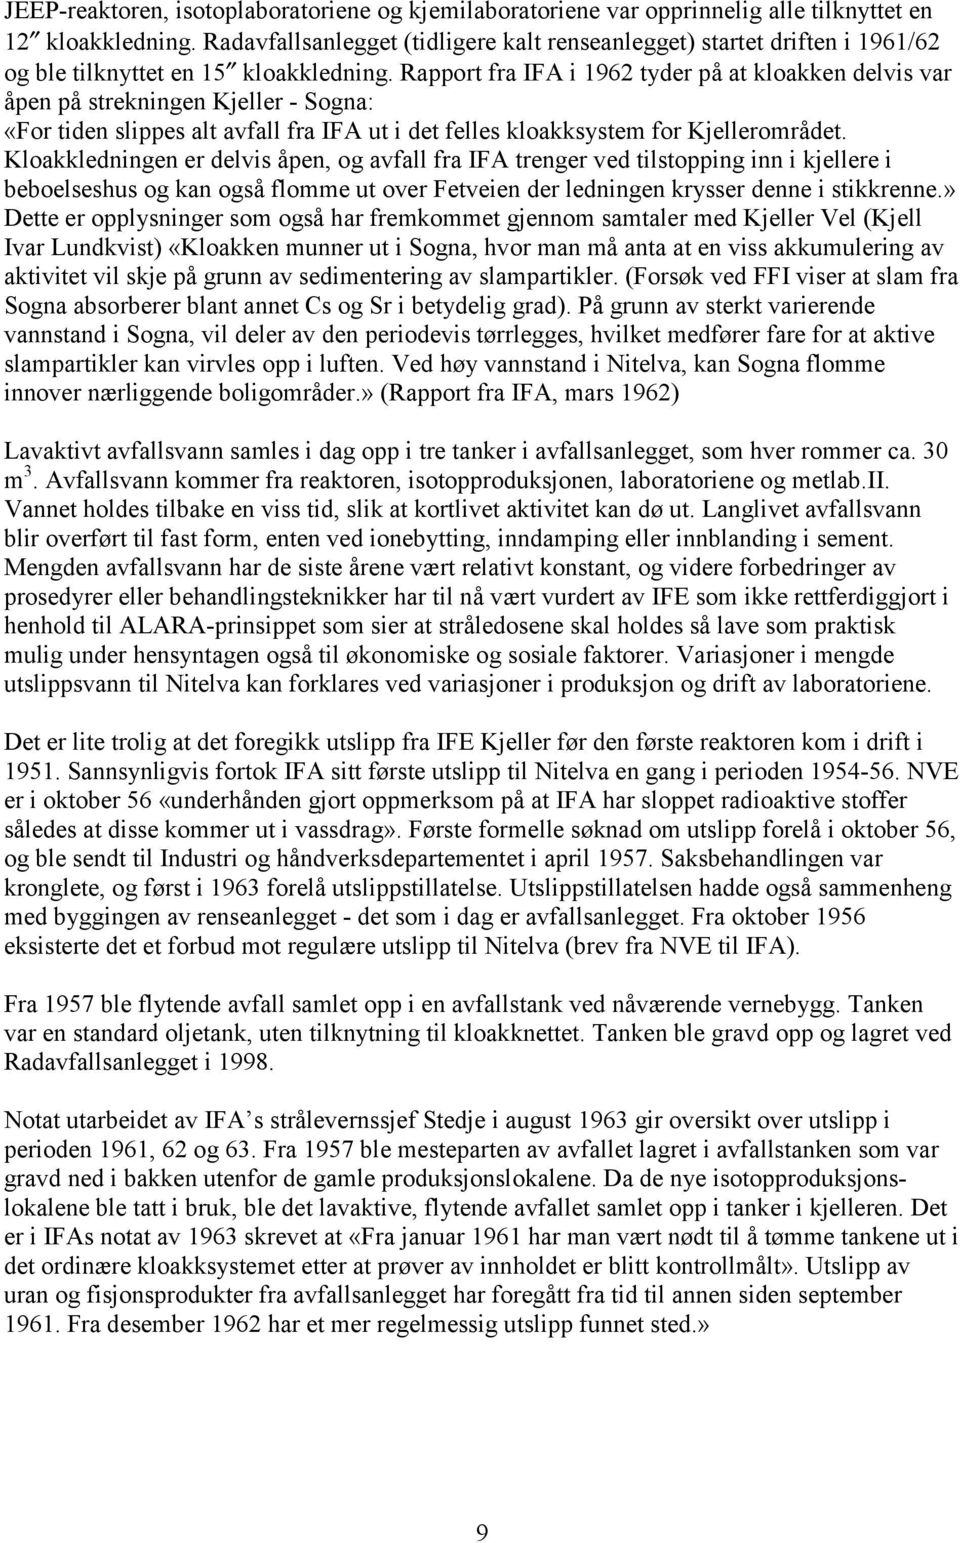 Rapport fra IFA i 1962 tyder på at kloakken delvis var åpen på strekningen Kjeller - Sogna: «For tiden slippes alt avfall fra IFA ut i det felles kloakksystem for Kjellerområdet.